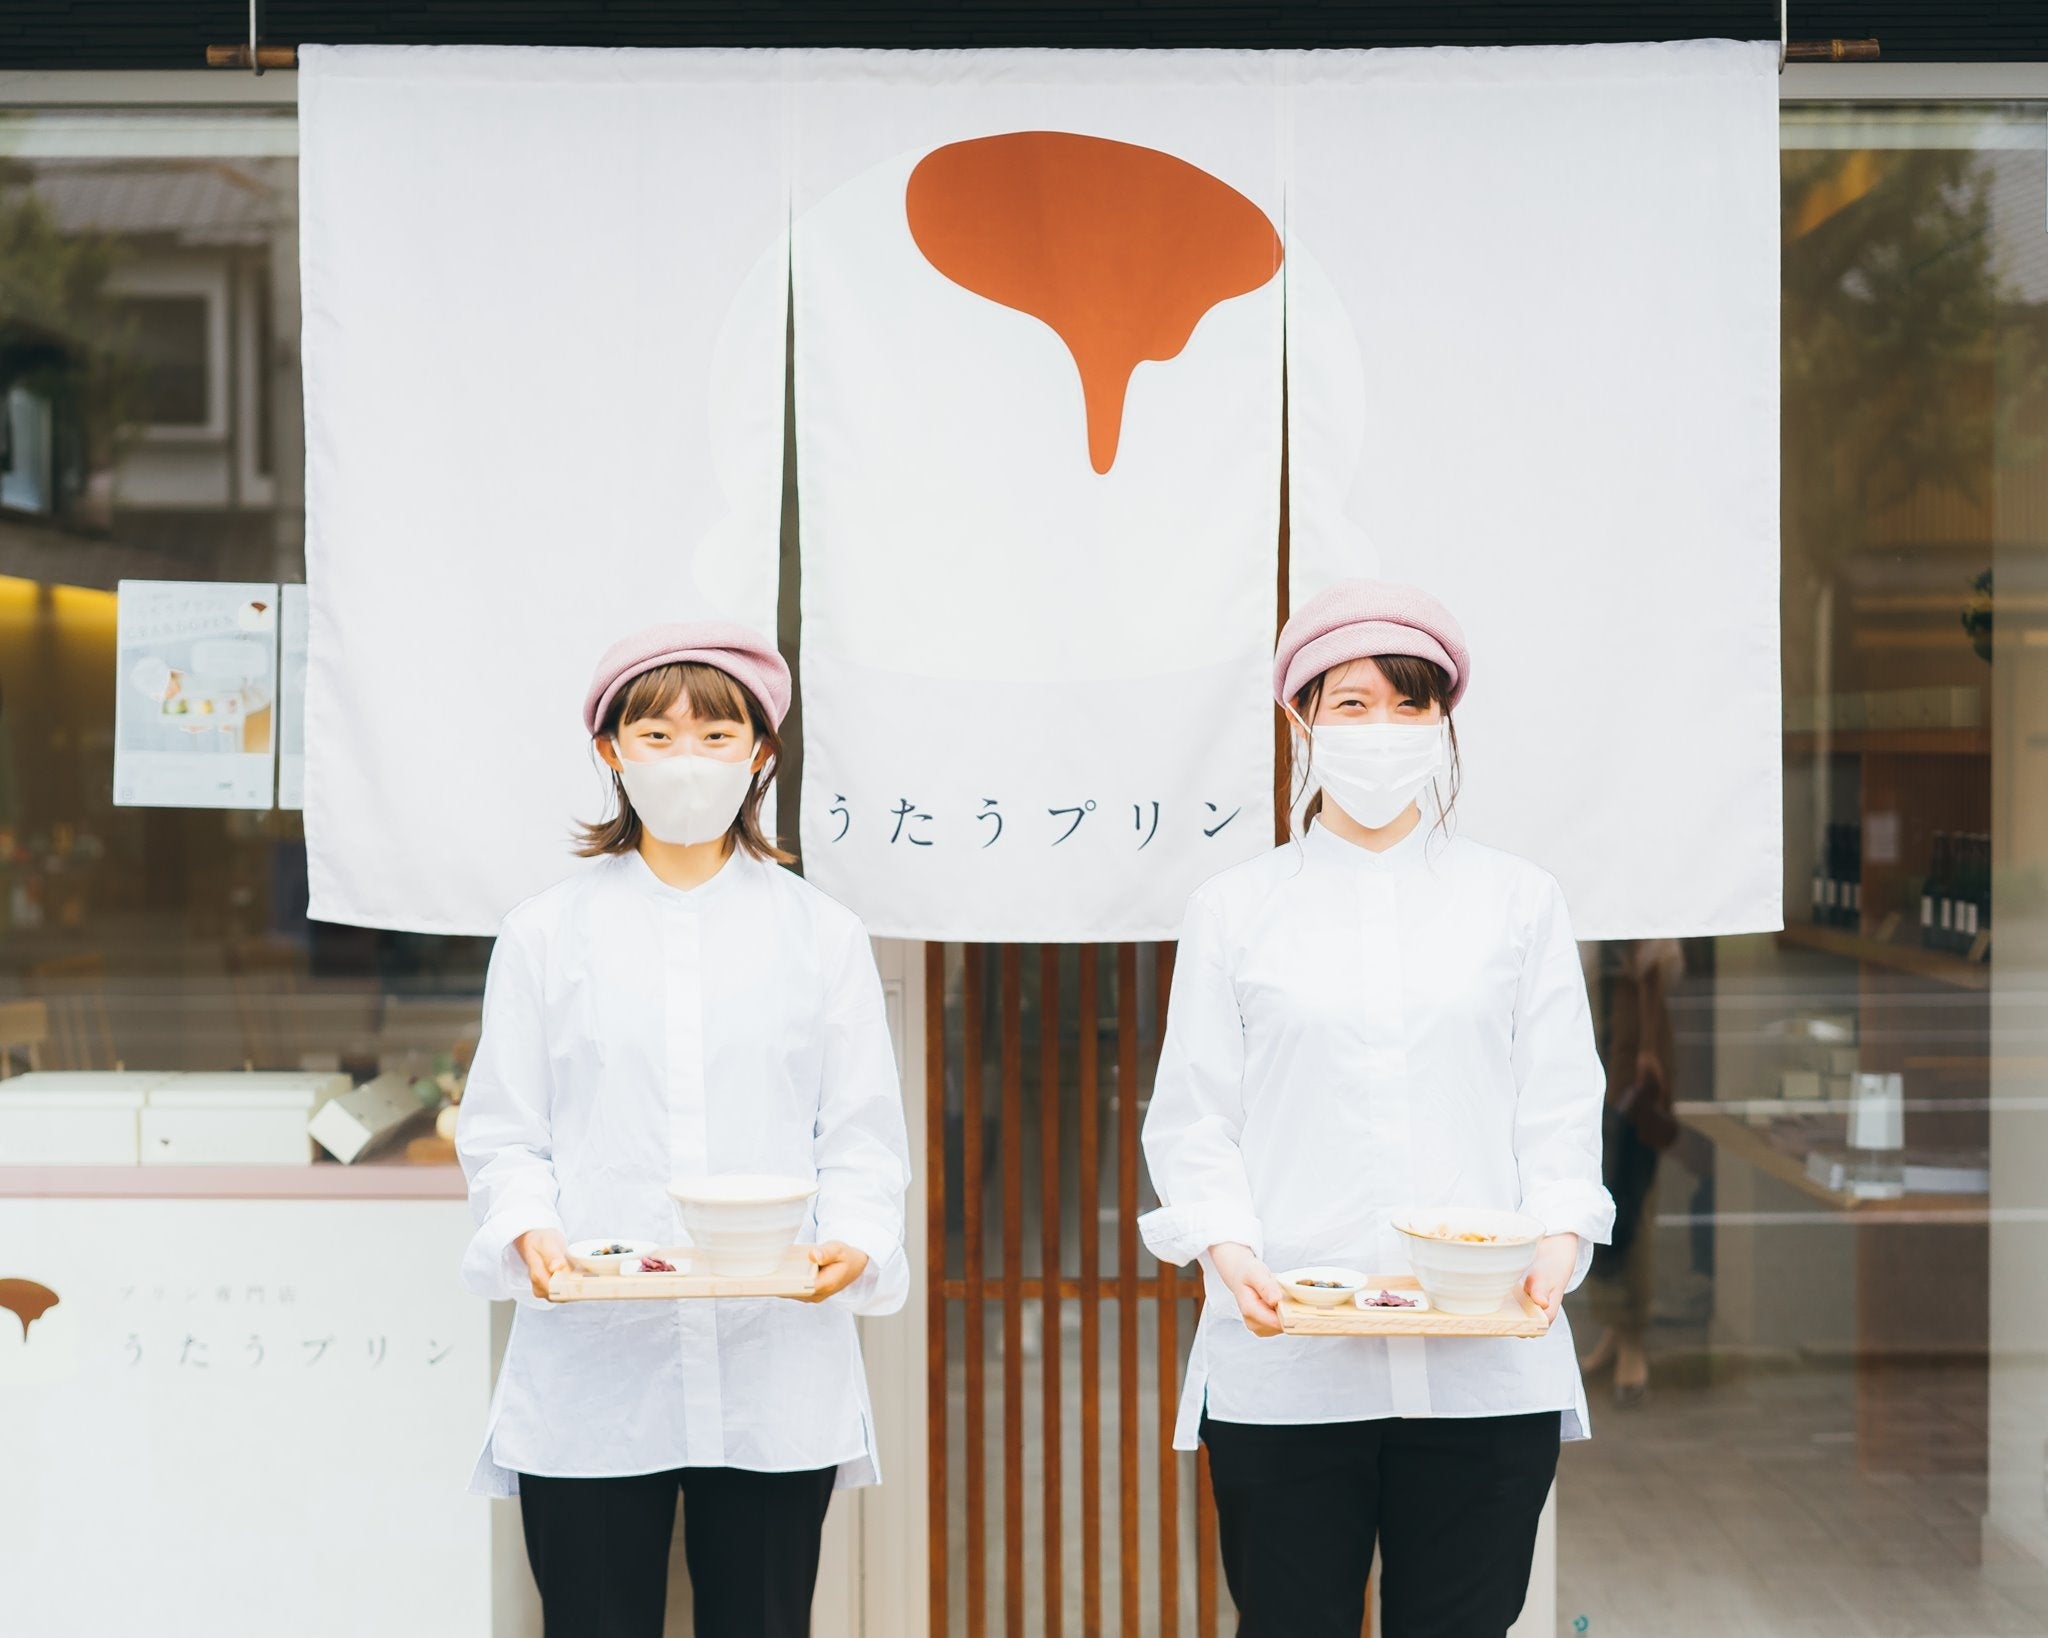 障害者就労支援事業所で製造している焼き菓子の「夏のおくりもの」を、京都発のライフスタイルショップmumoku...